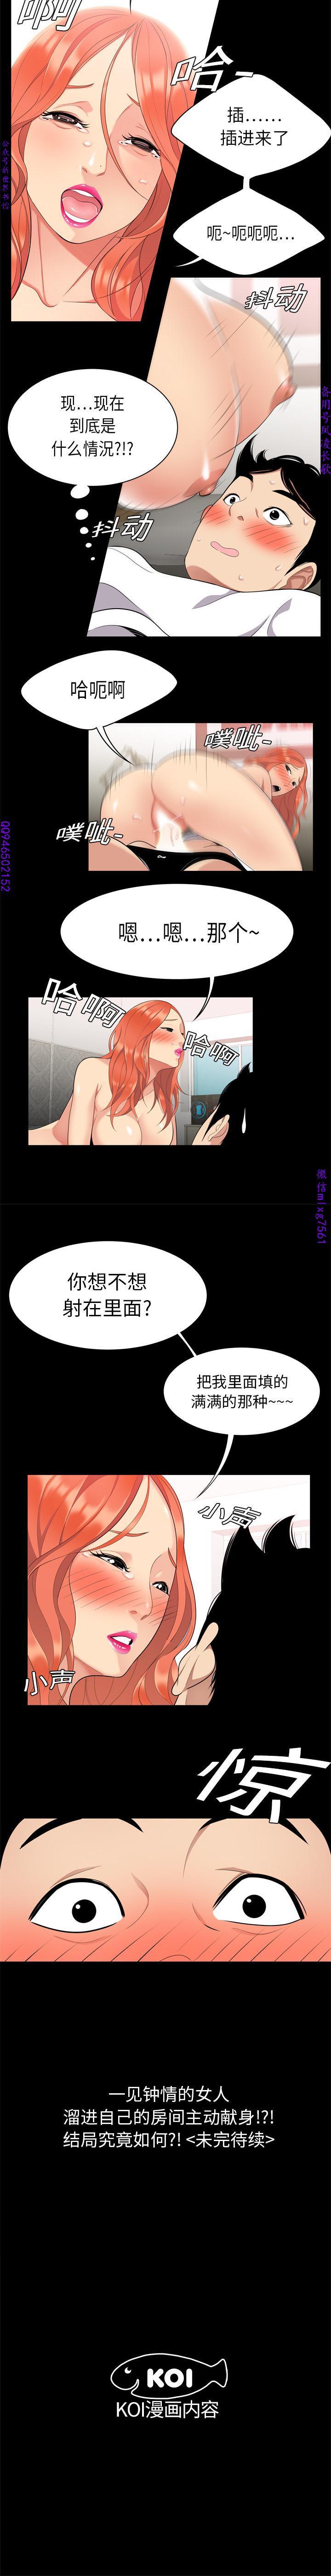 Bisexual 性爱百分百  完结 【中文】 Car - Page 7